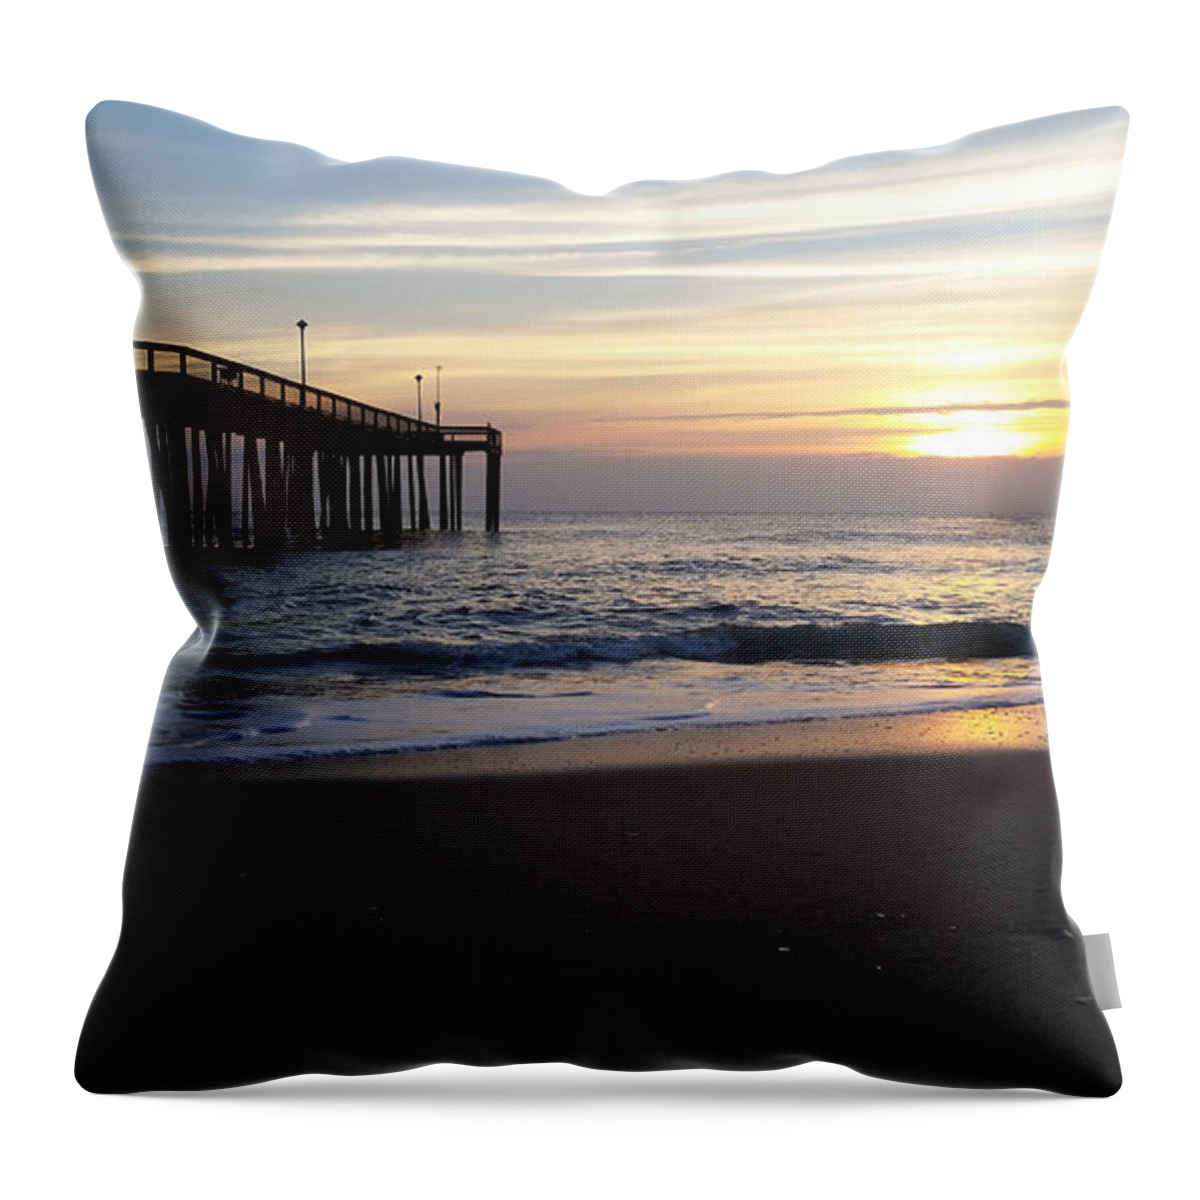 Sun Throw Pillow featuring the photograph Calm Seas At Sunrise by Robert Banach